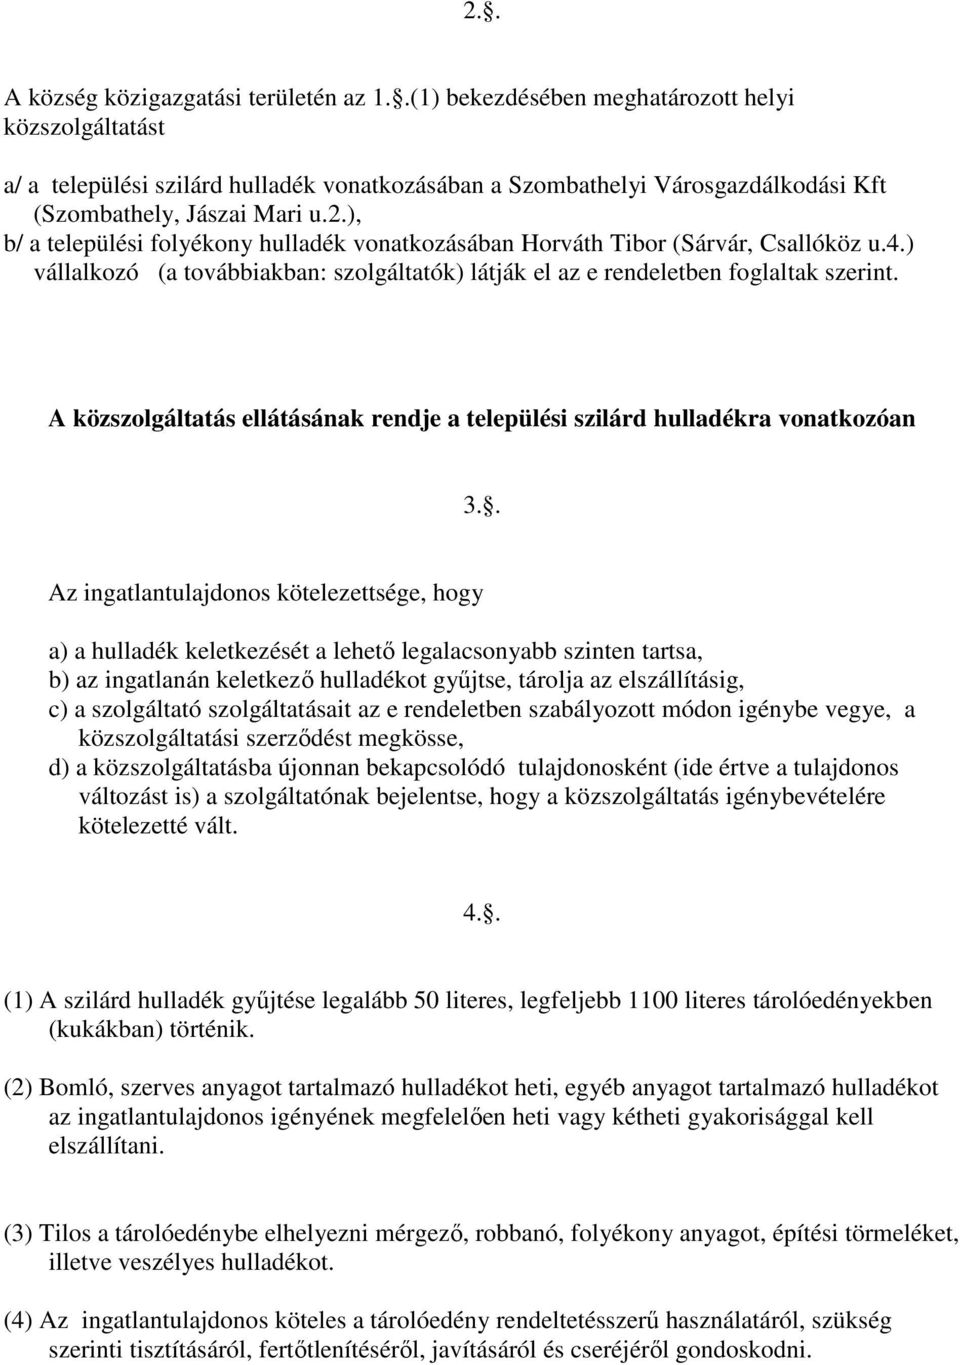 ), b/ a települési folyékony hulladék vonatkozásában Horváth Tibor (Sárvár, Csallóköz u.4.) vállalkozó (a továbbiakban: szolgáltatók) látják el az e rendeletben foglaltak szerint.